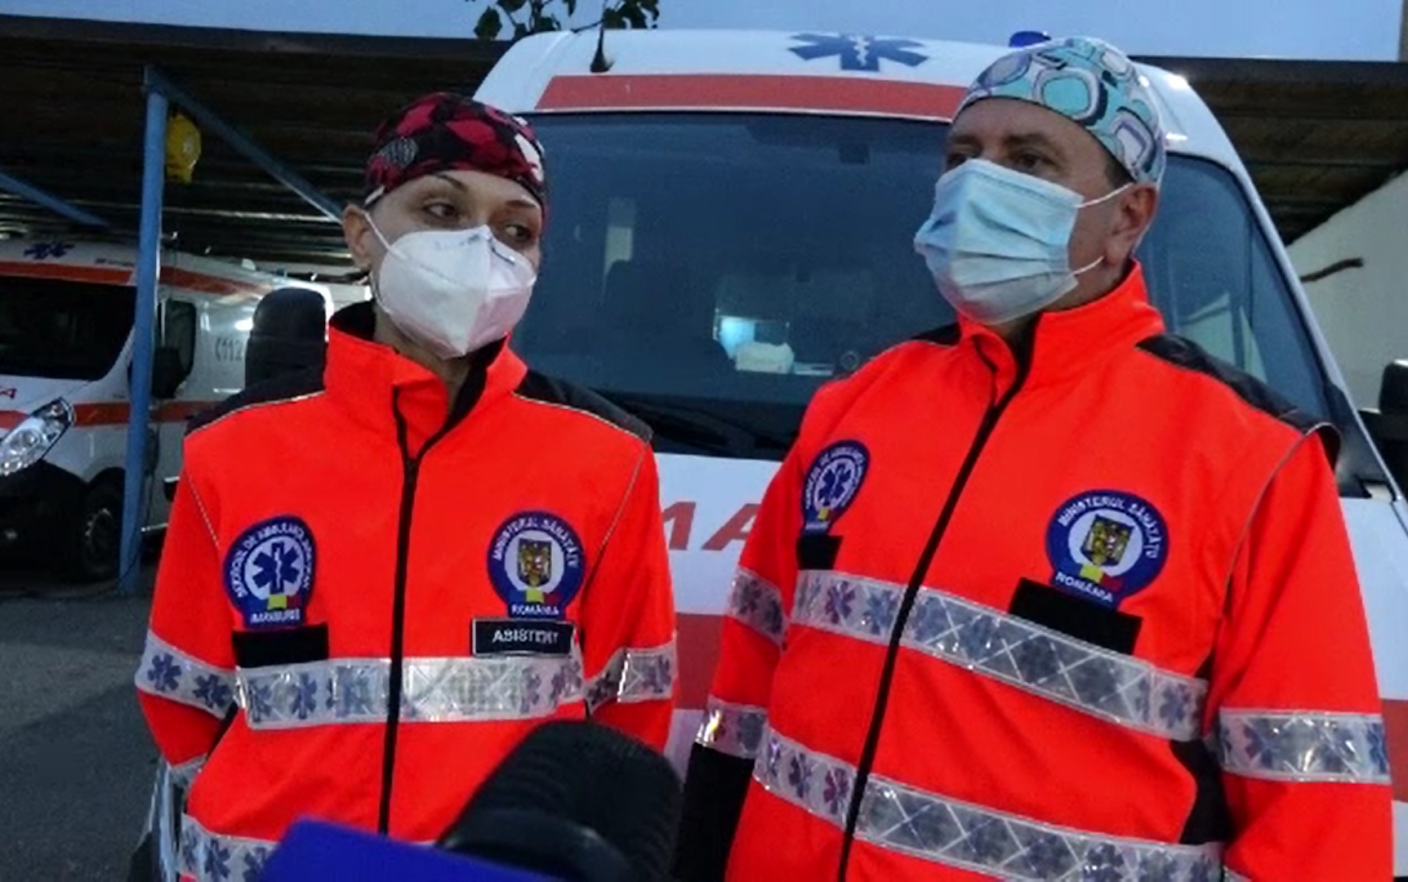 echipament de ambulanță elvețiană anti îmbătrânire)